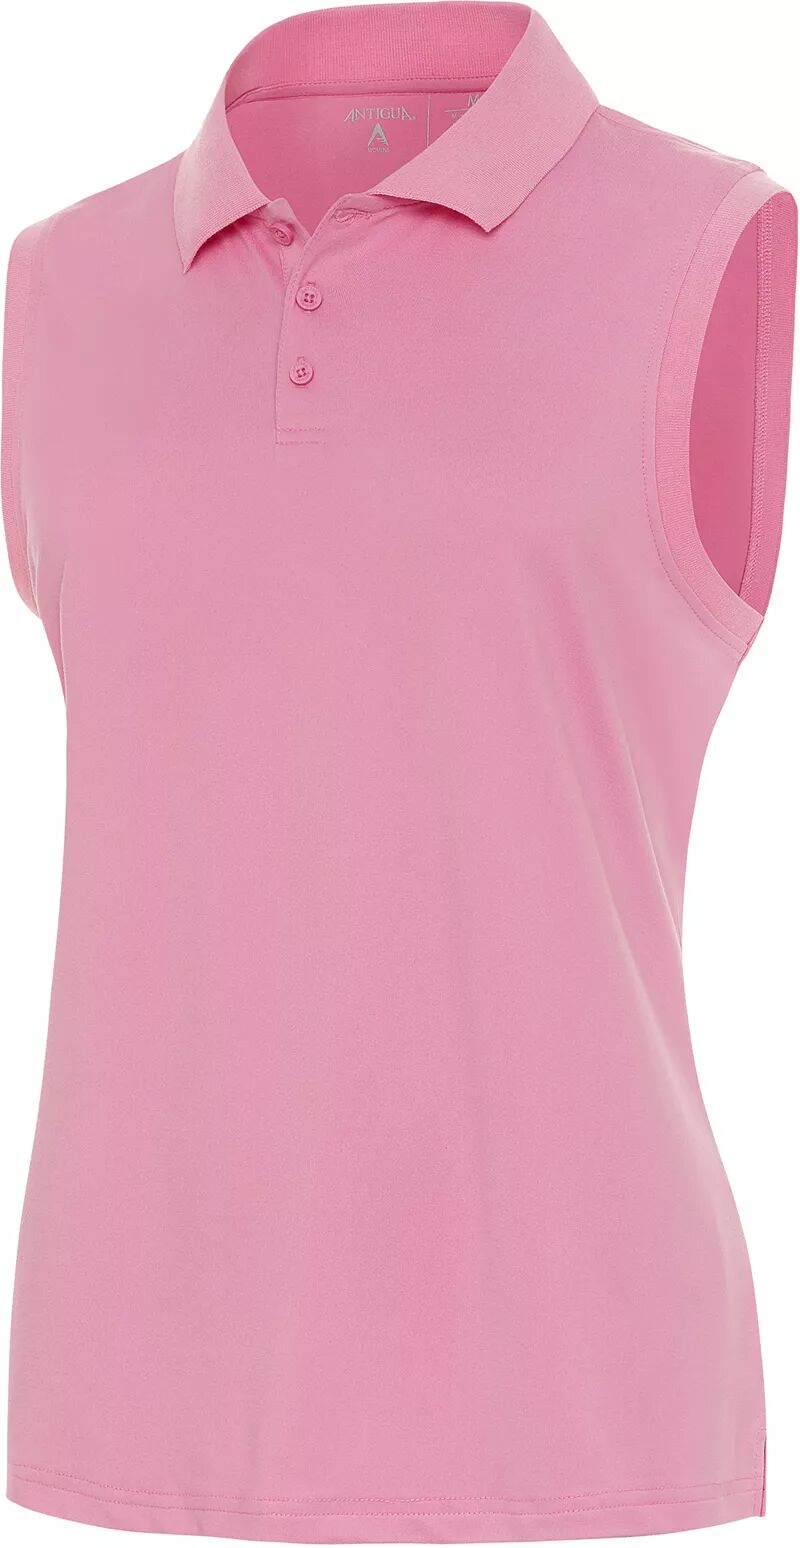 Женская рубашка-поло для гольфа без рукавов Antigua Recap